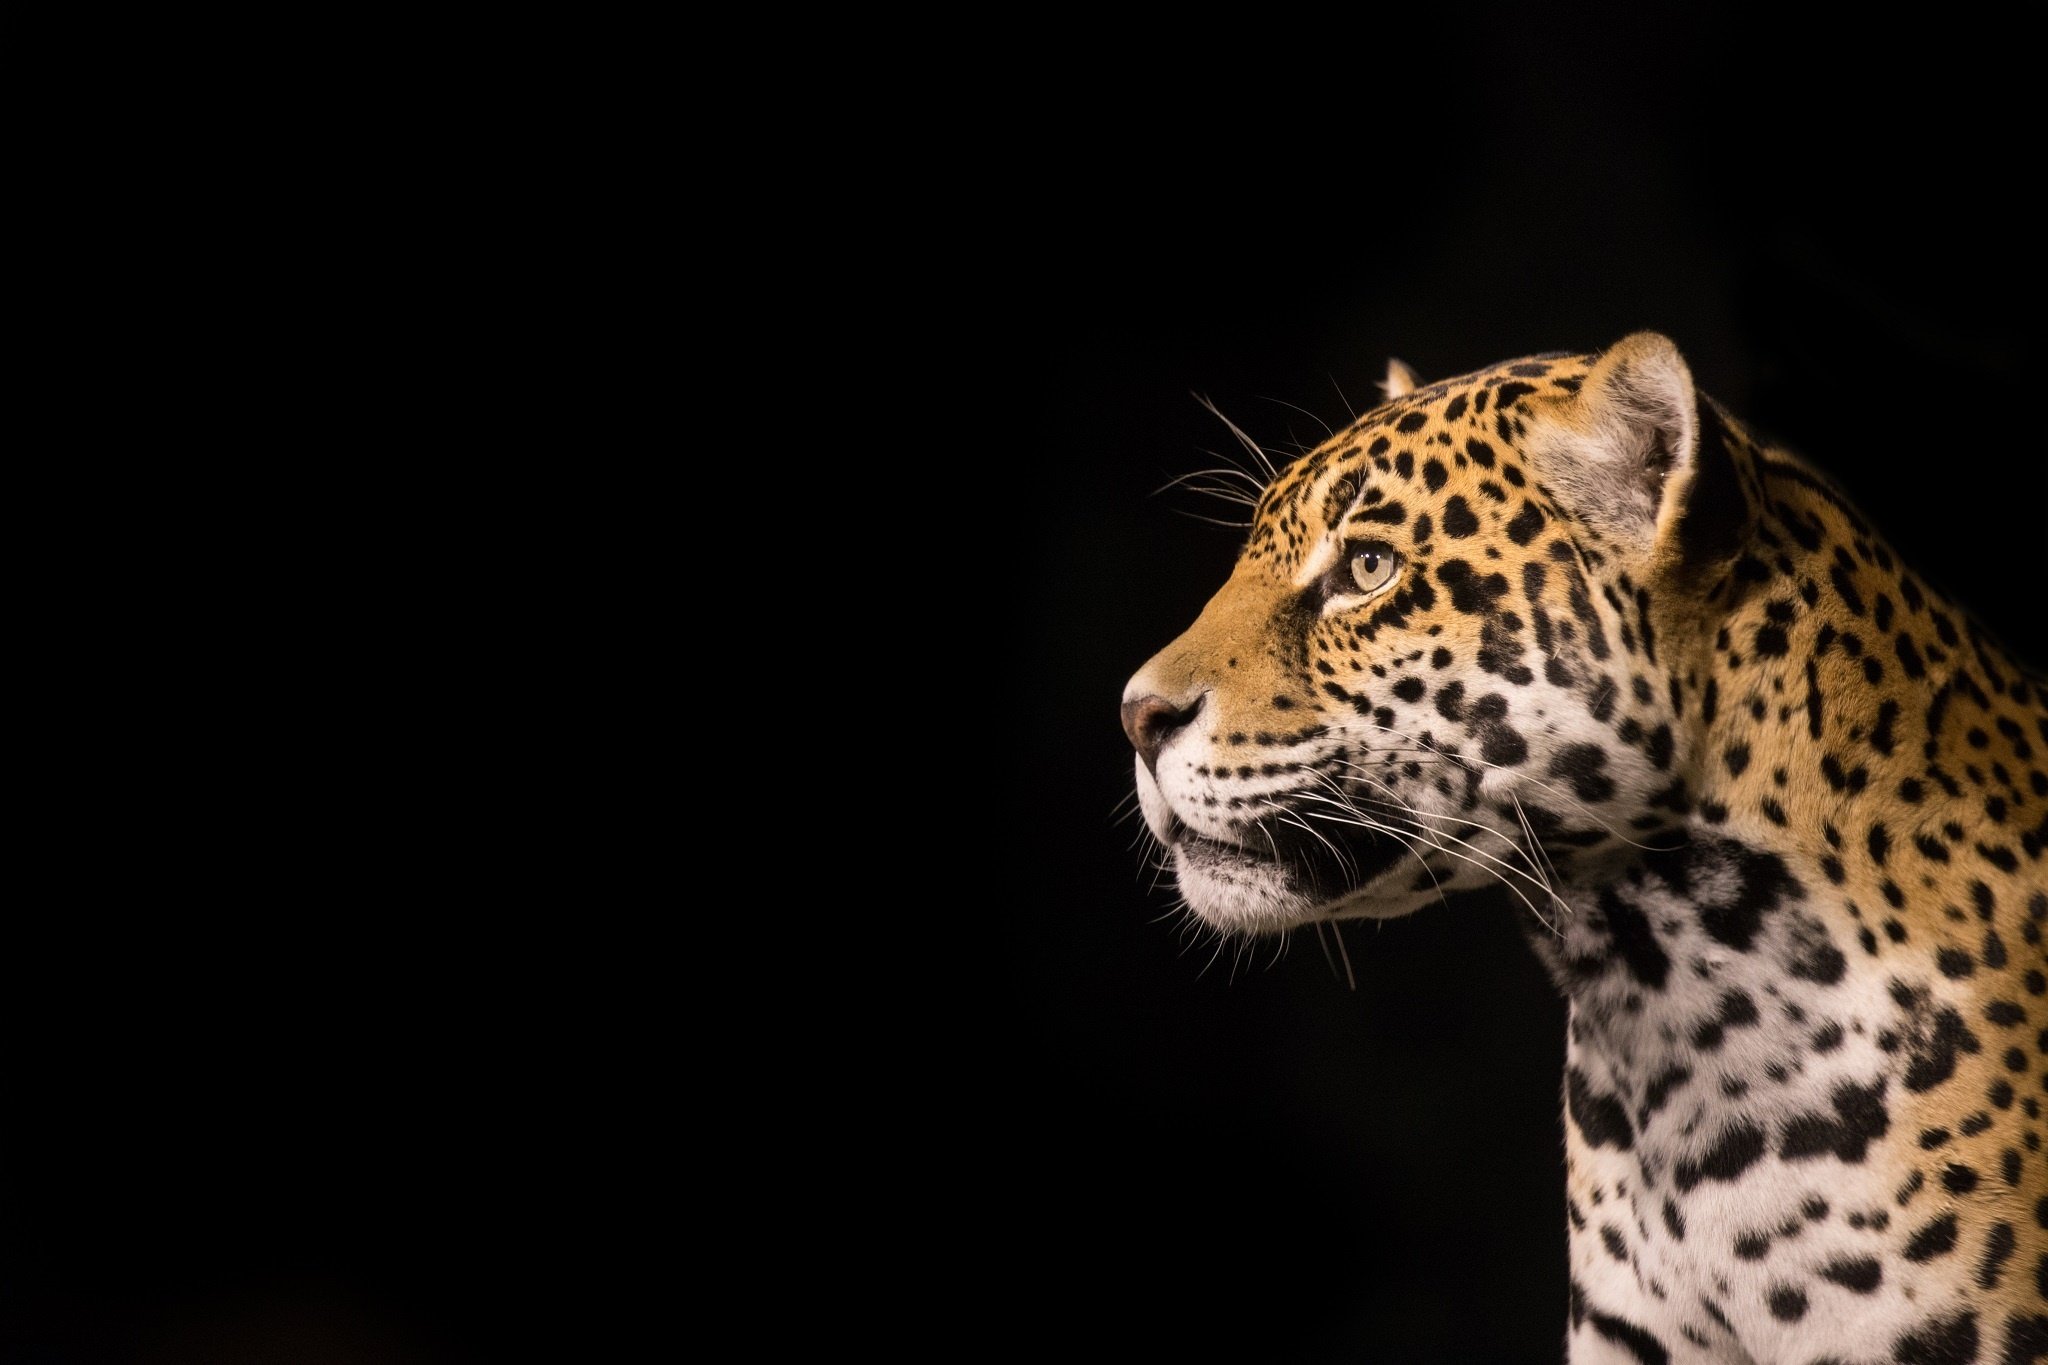 Jaguar Wild Cat Predator Face Profil Wallpapers Hd Desktop And